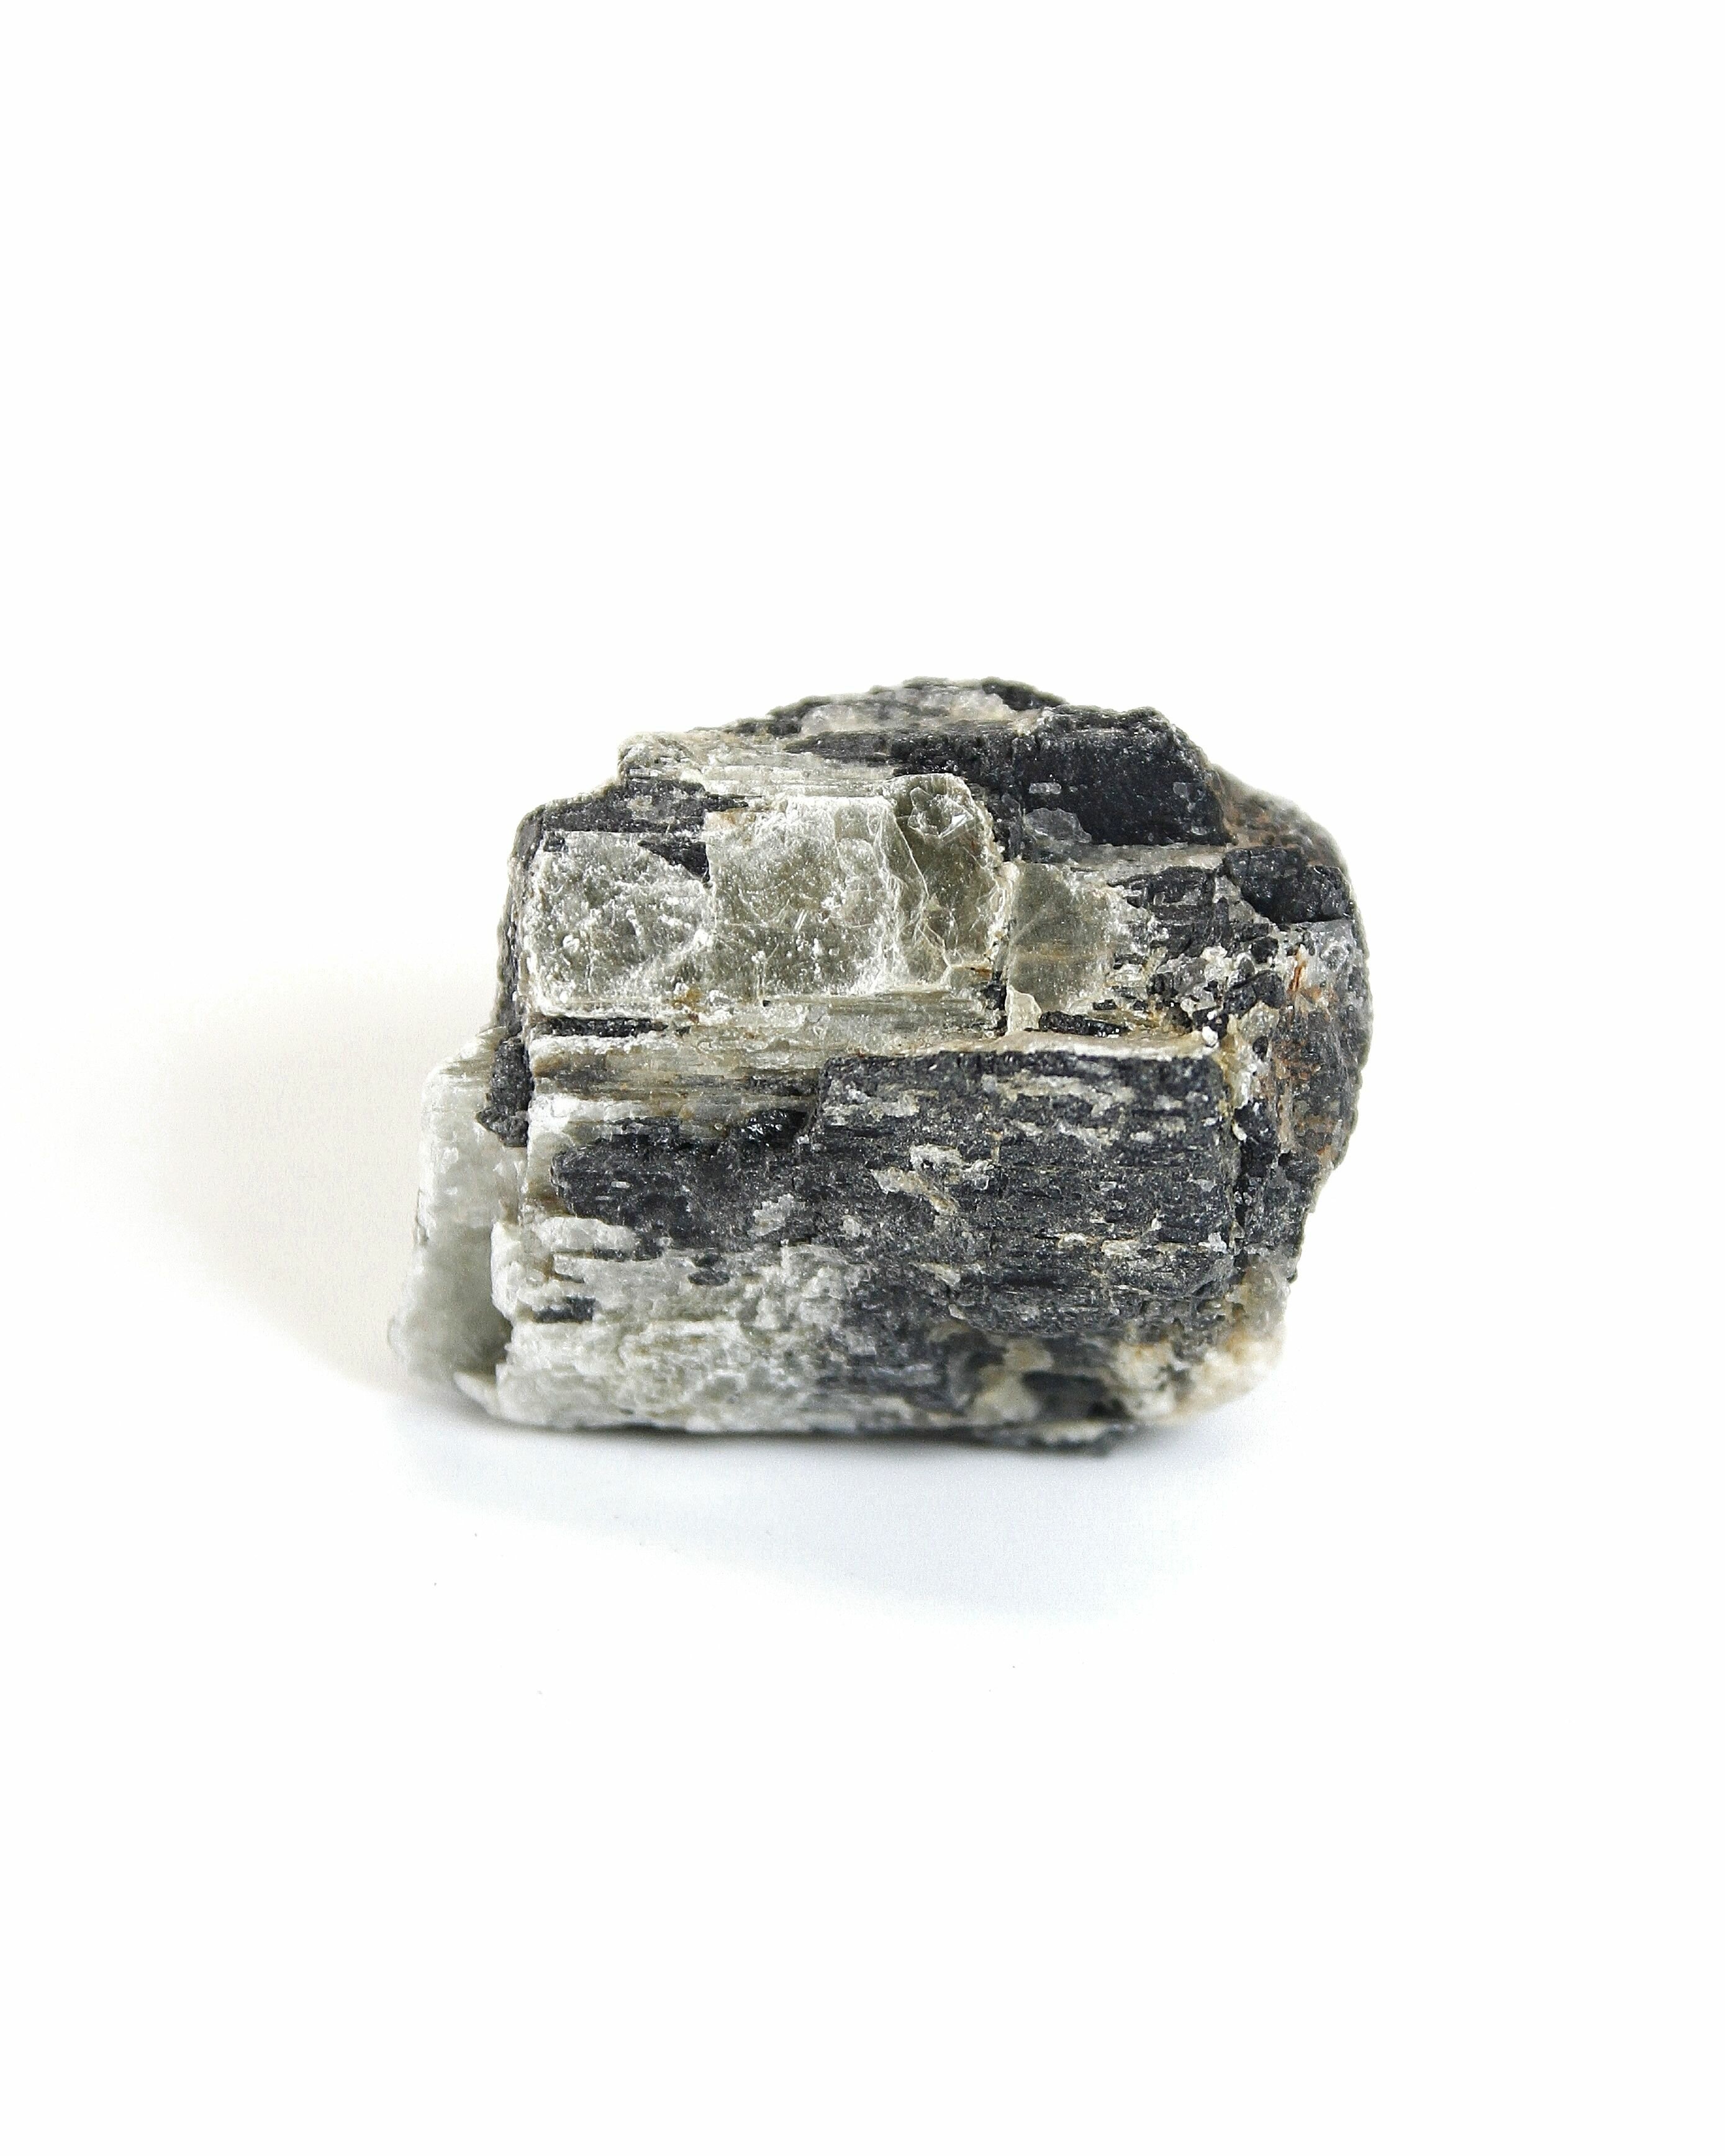 Черный турмалин (Шерл) - 4.5-5.5 см натуральный камень колотый необработанный 1 шт - для декора поделок бижутерии